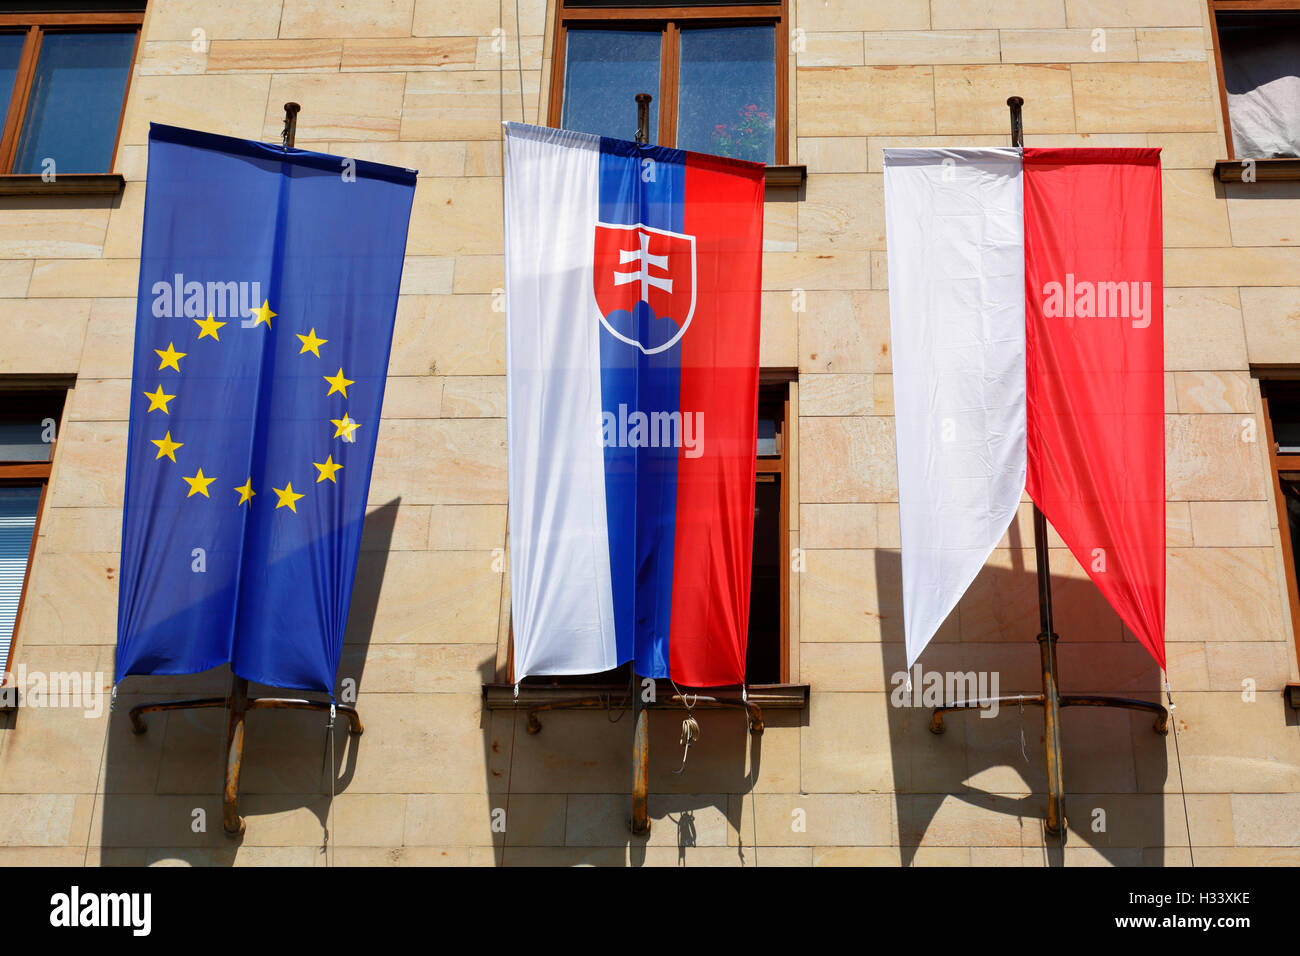 Europaflagge, Slowakische Flagge und Flagge der Stadt Bratislava, Neues Rathaus am Primatial Platz in Bratislava, Westslowakei, Slowakische Republik Stock Photo